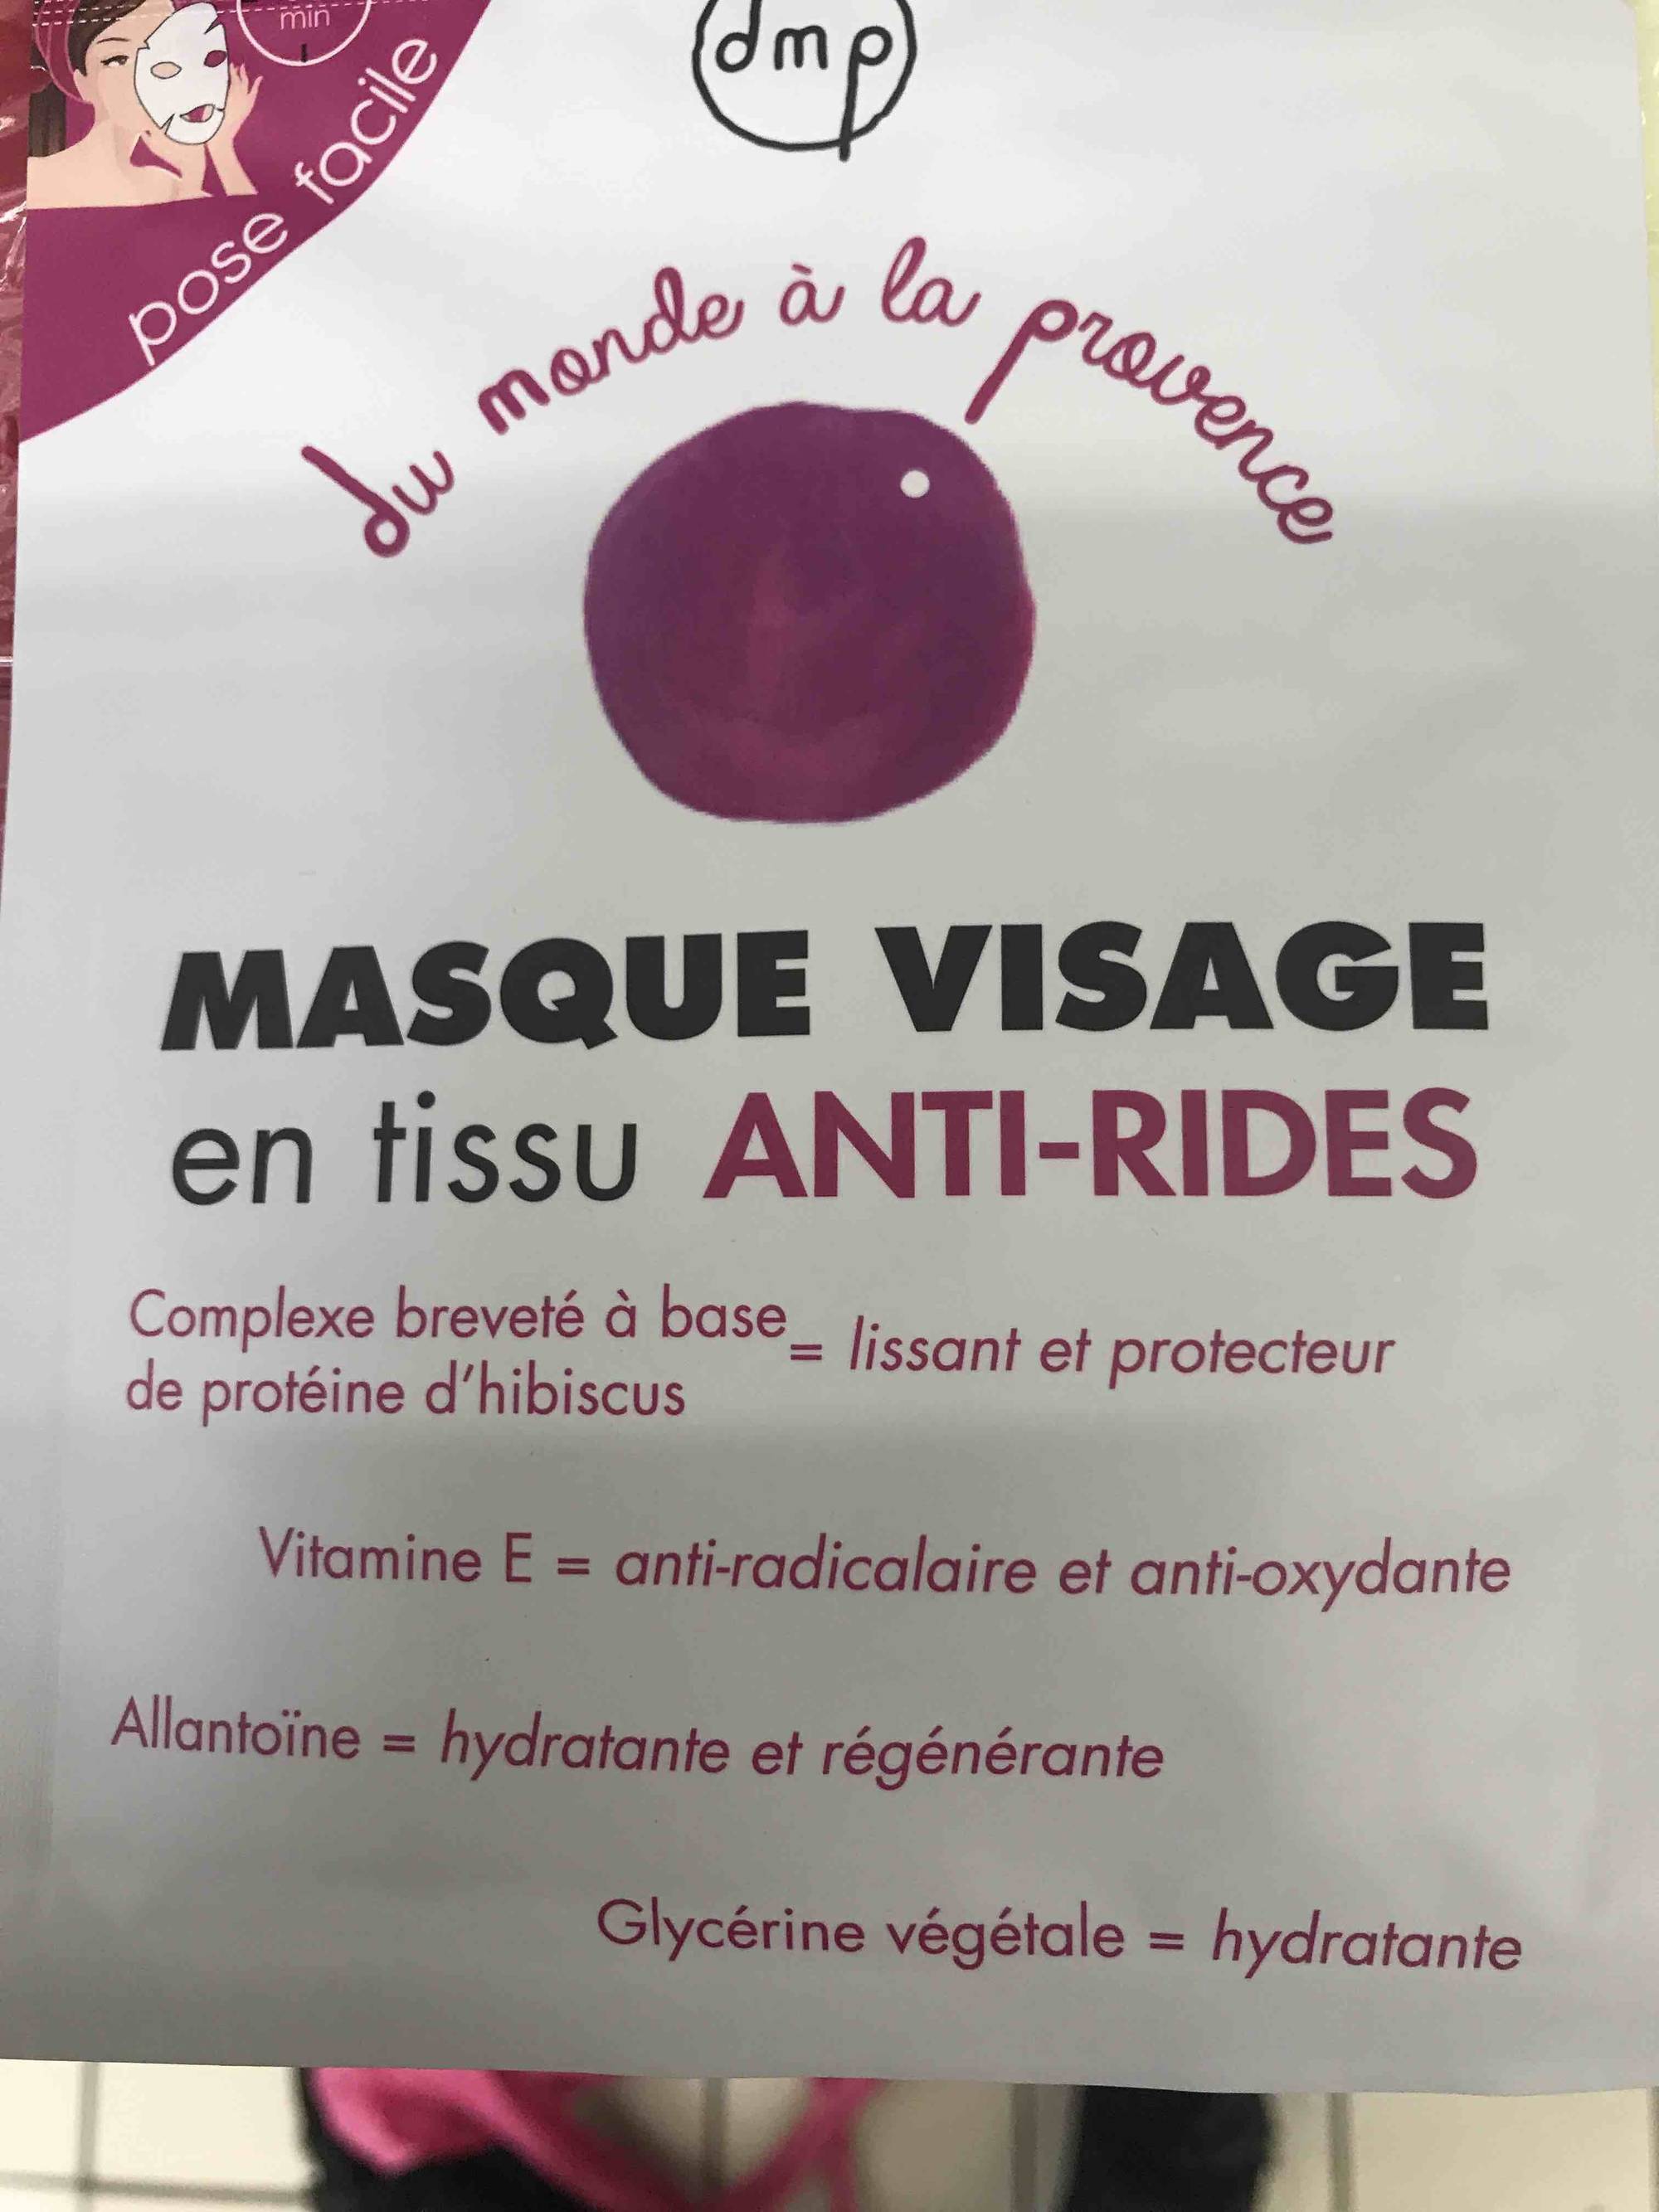 DMP DU MONDE À LA PROVENCE - Masque visage en tissu anti-rides